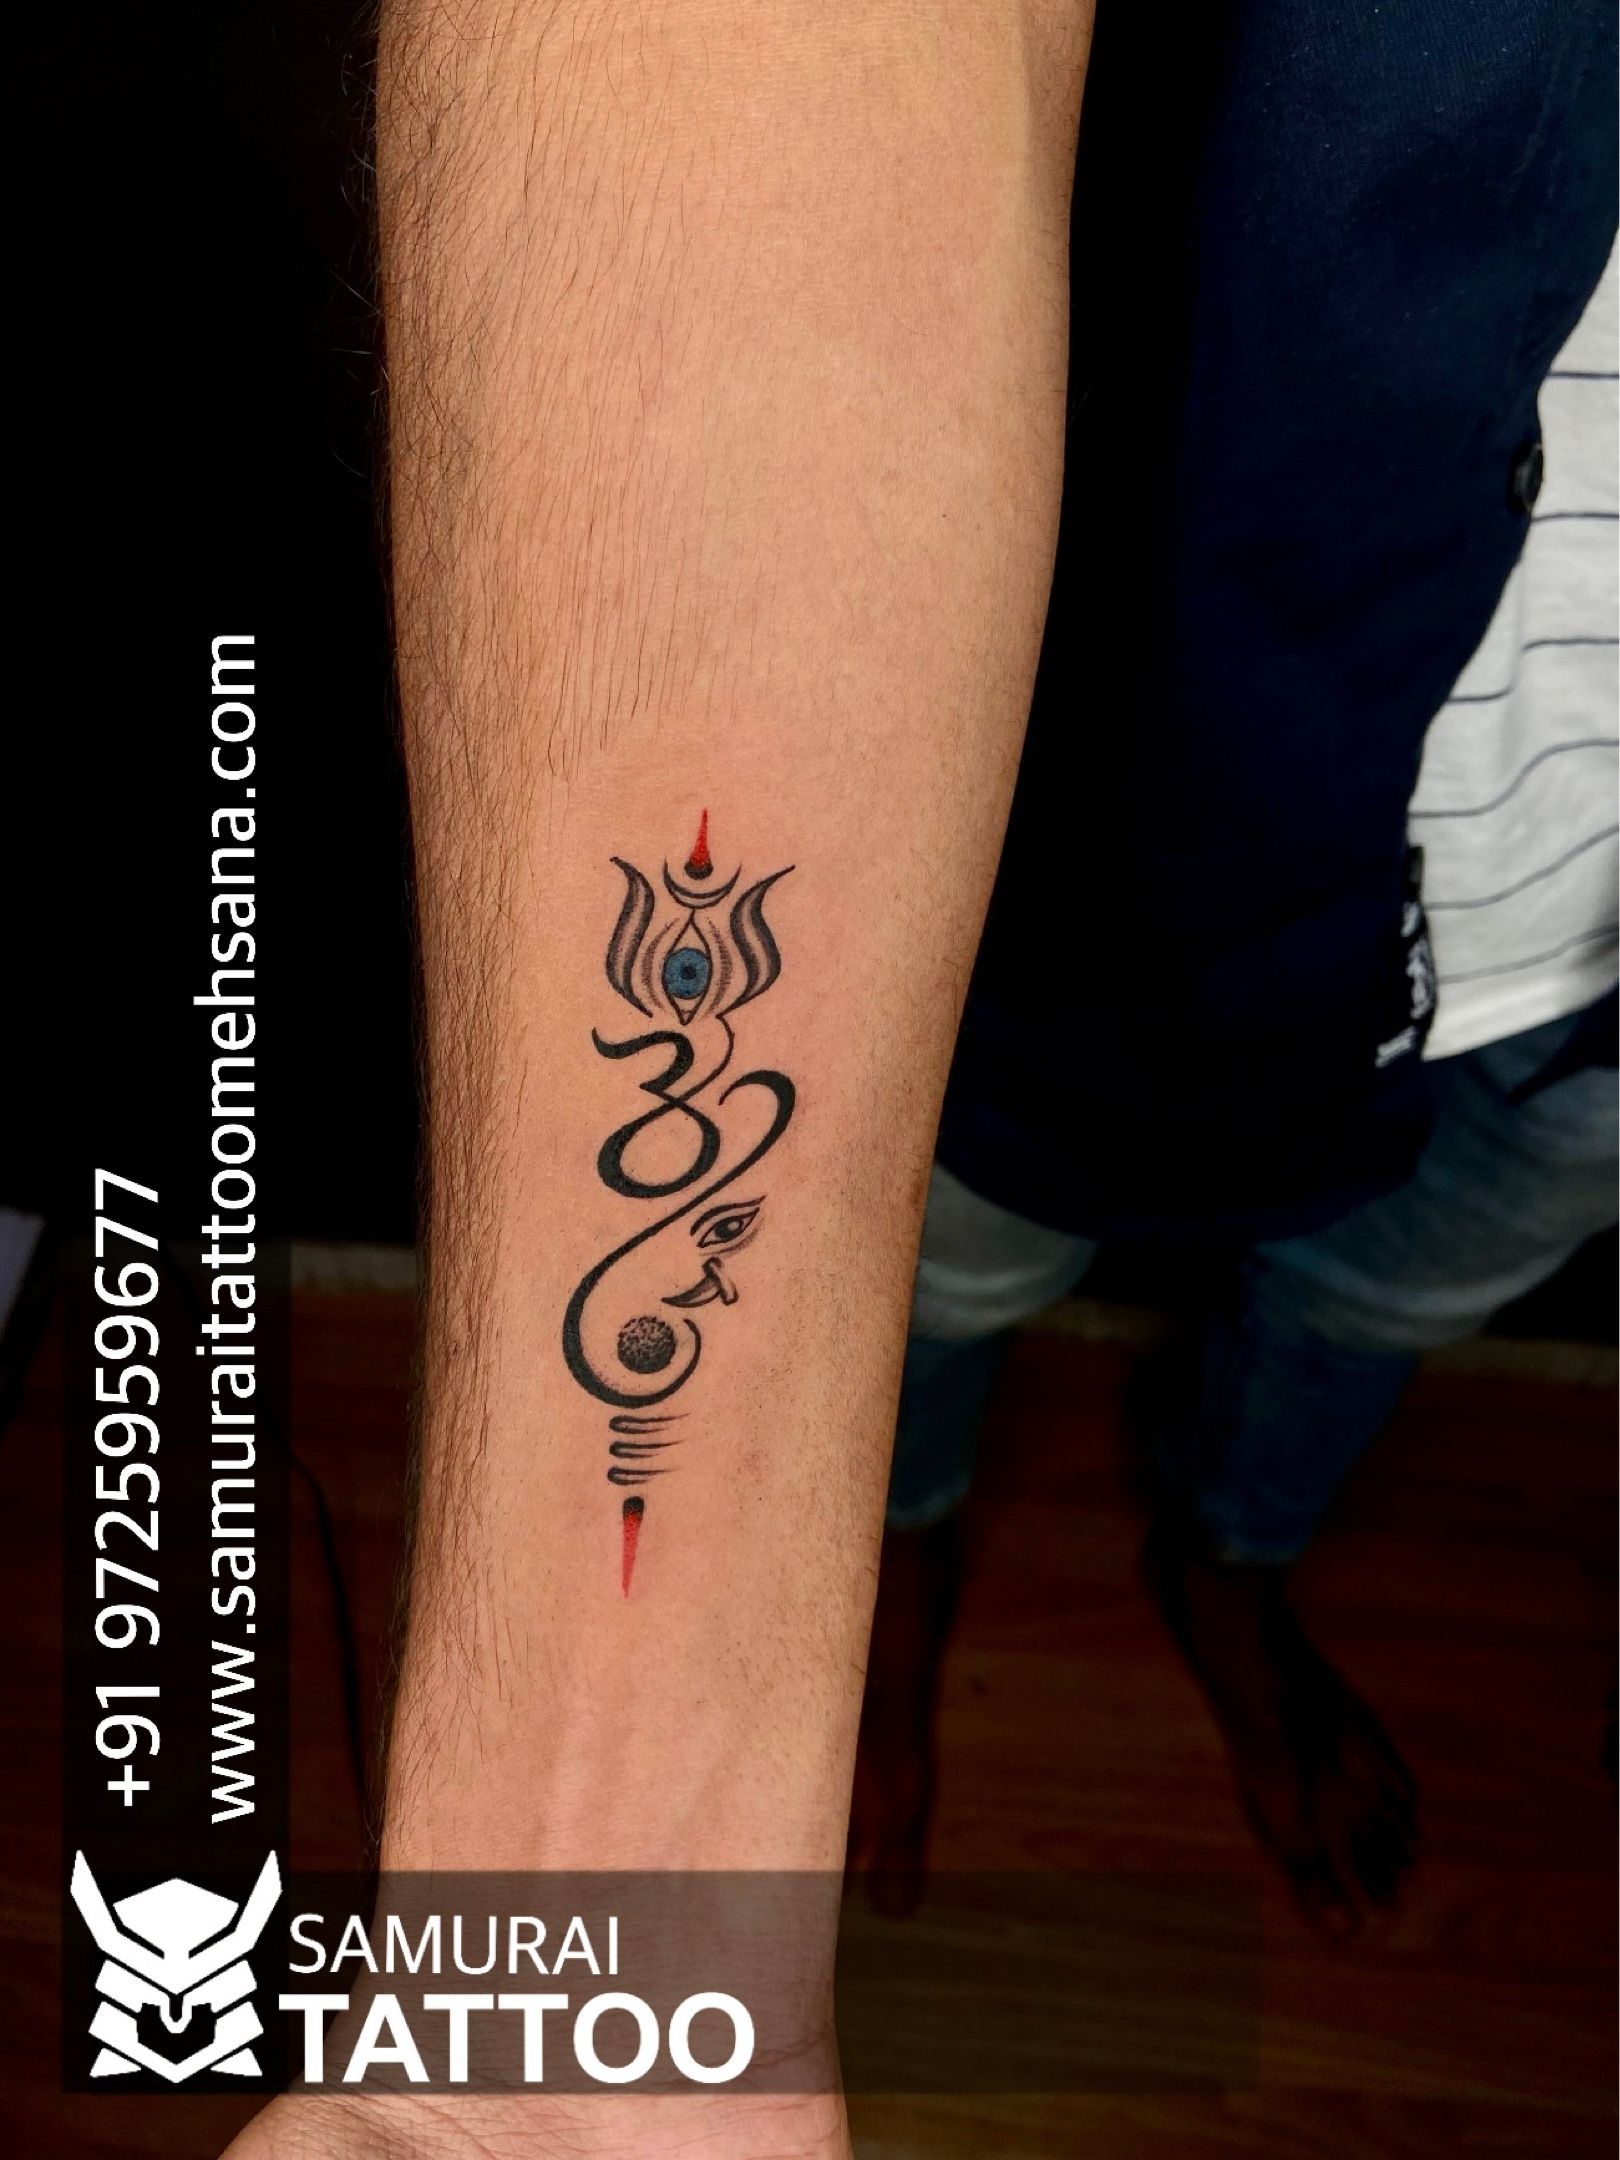 Tattoo uploaded by Samurai Tattoo mehsana • Trishul tattoo